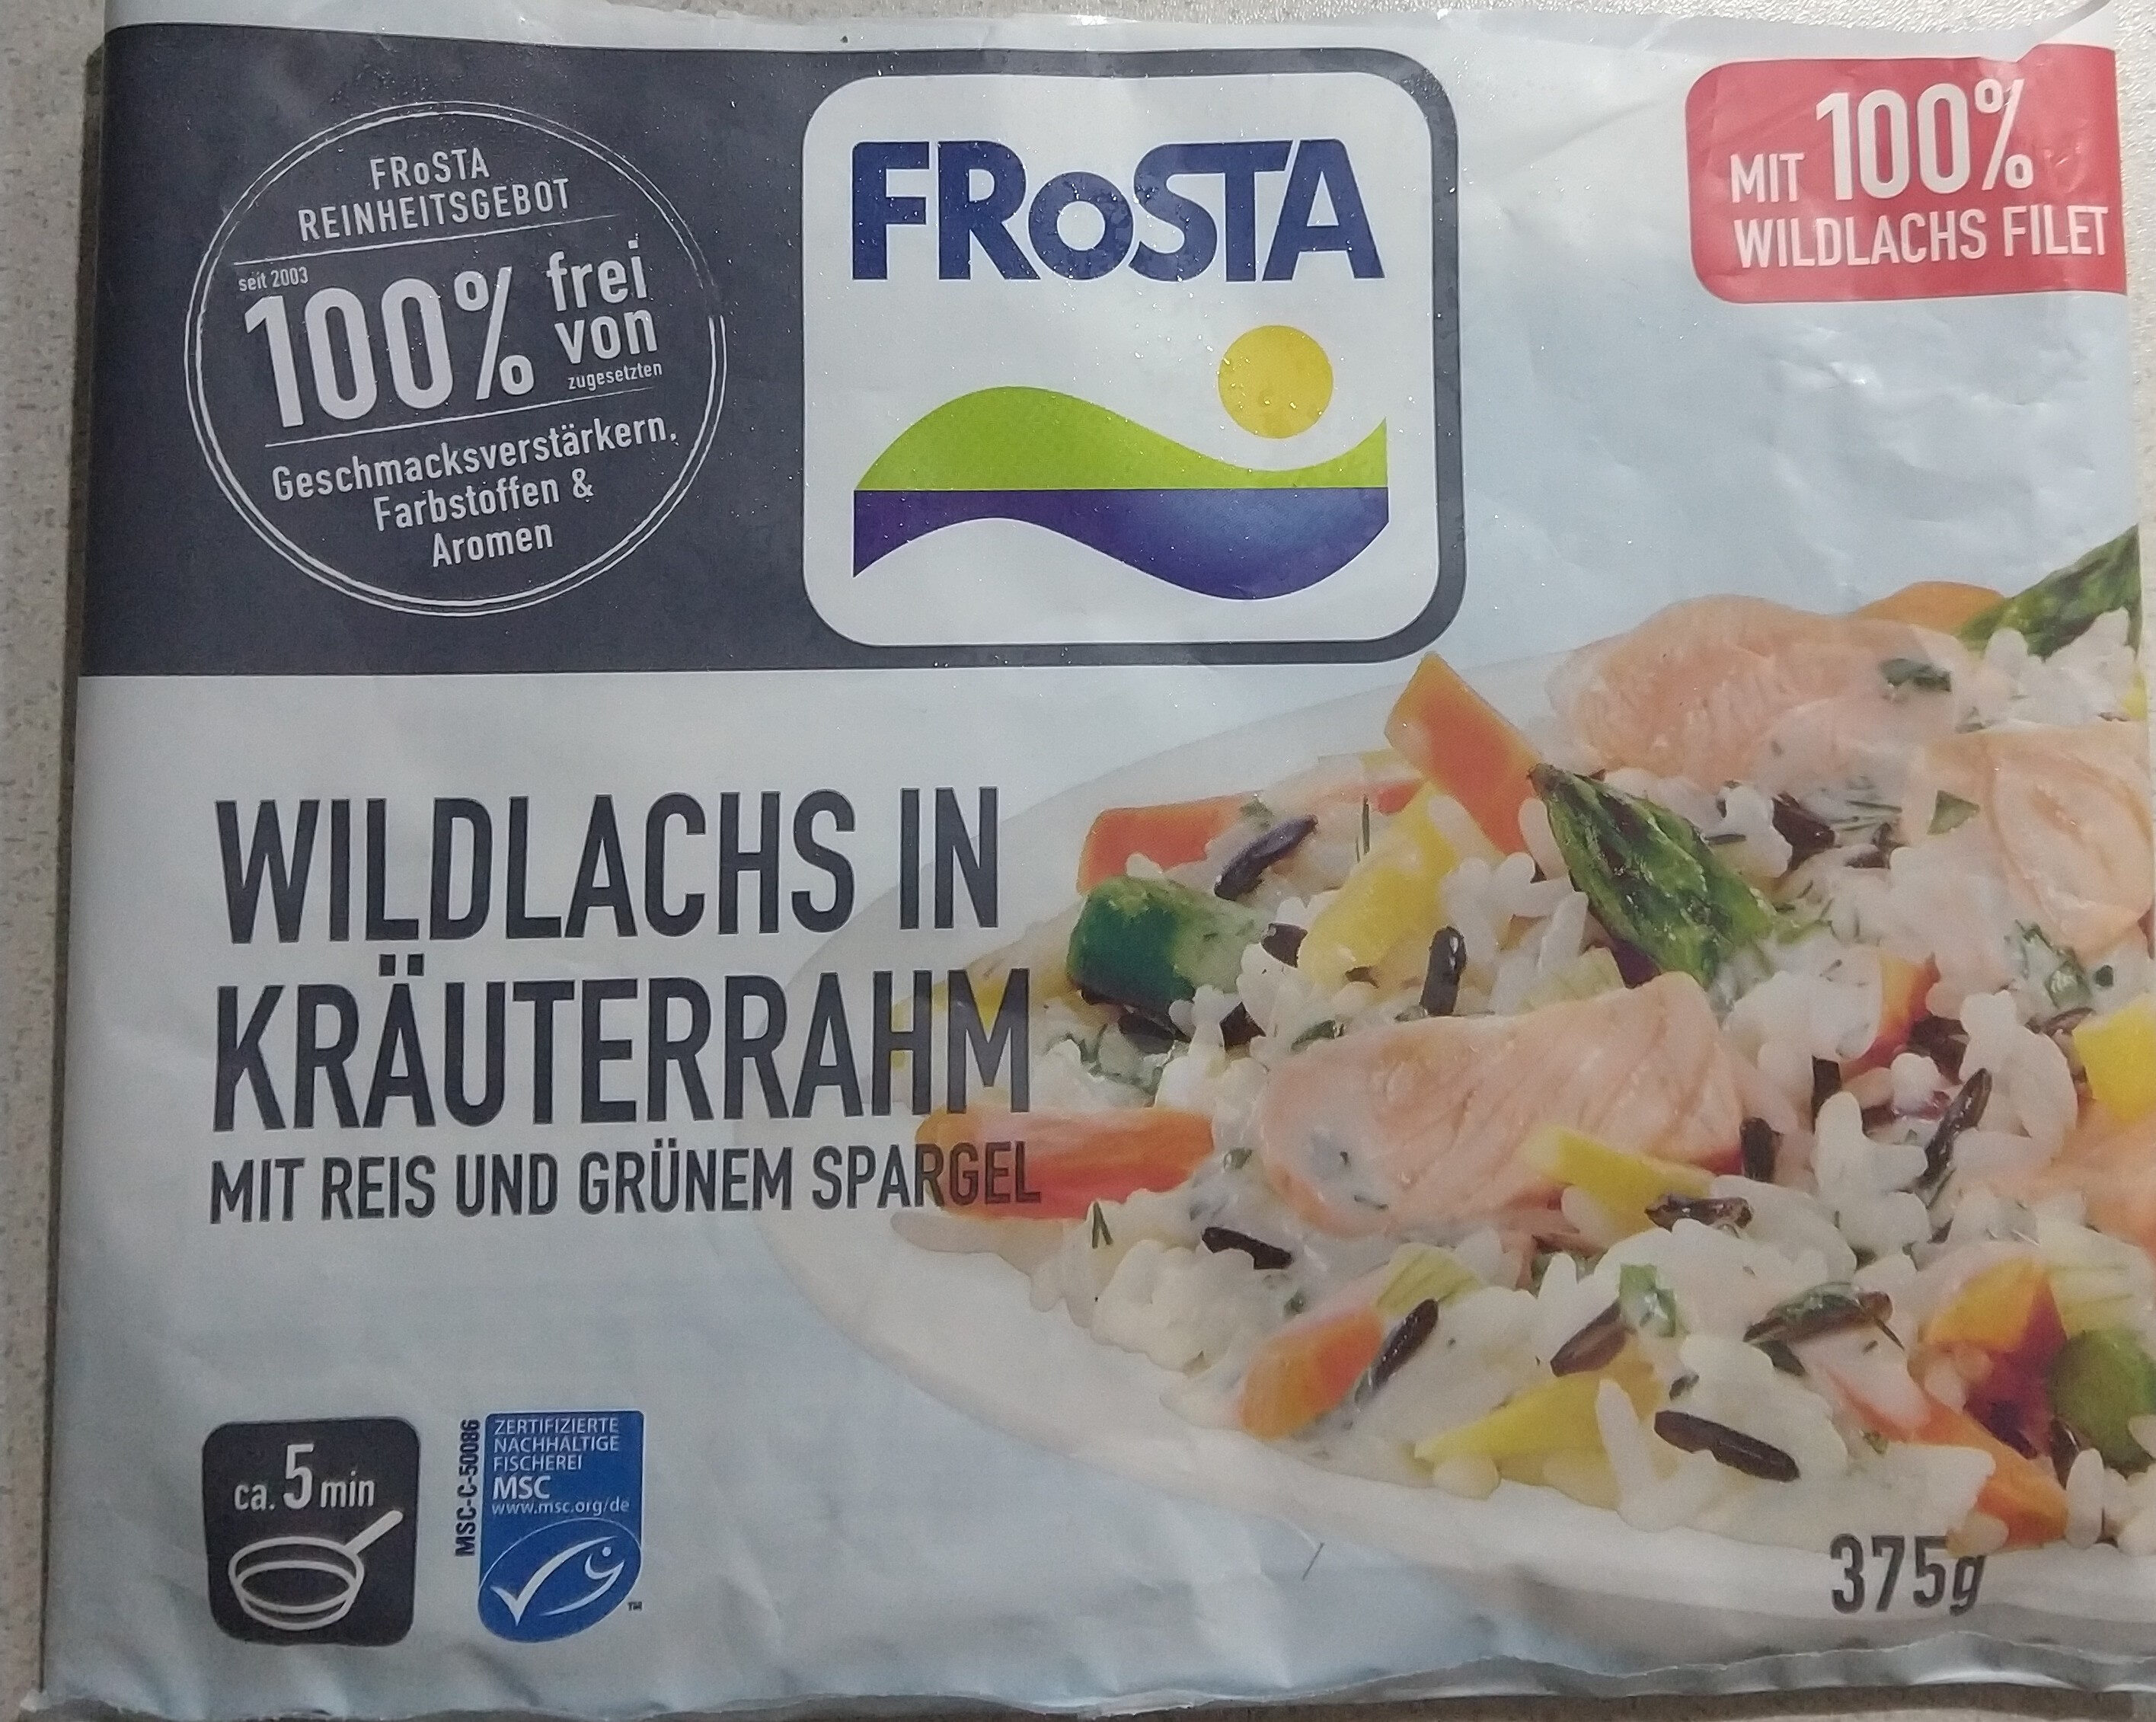 Frosta wildlachs in kräuterrahm - Produkt